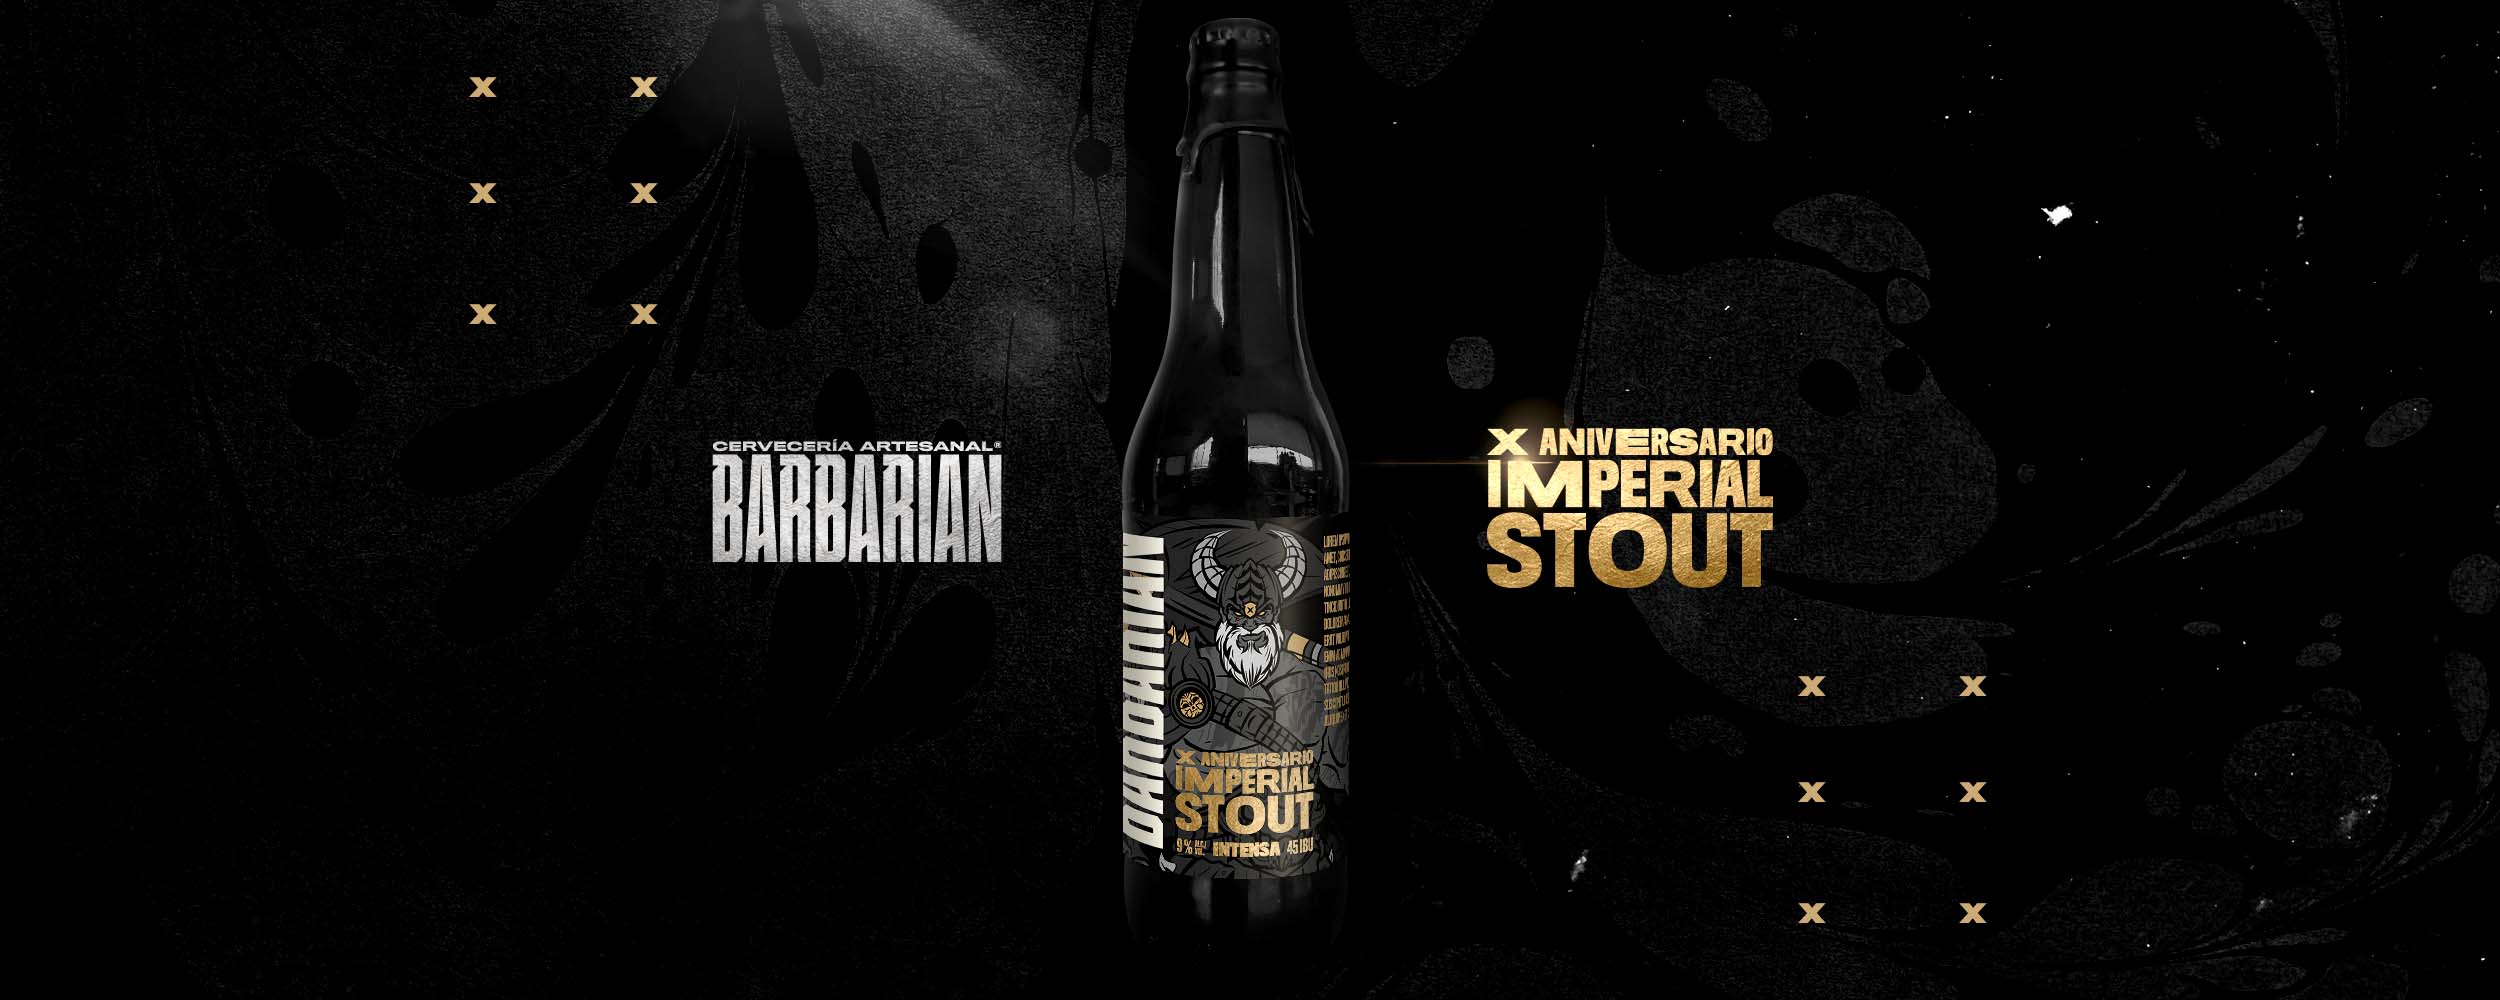 Barbarian celebra 10 años de fundación con el lanzamiento de su cerveza X Aniversario